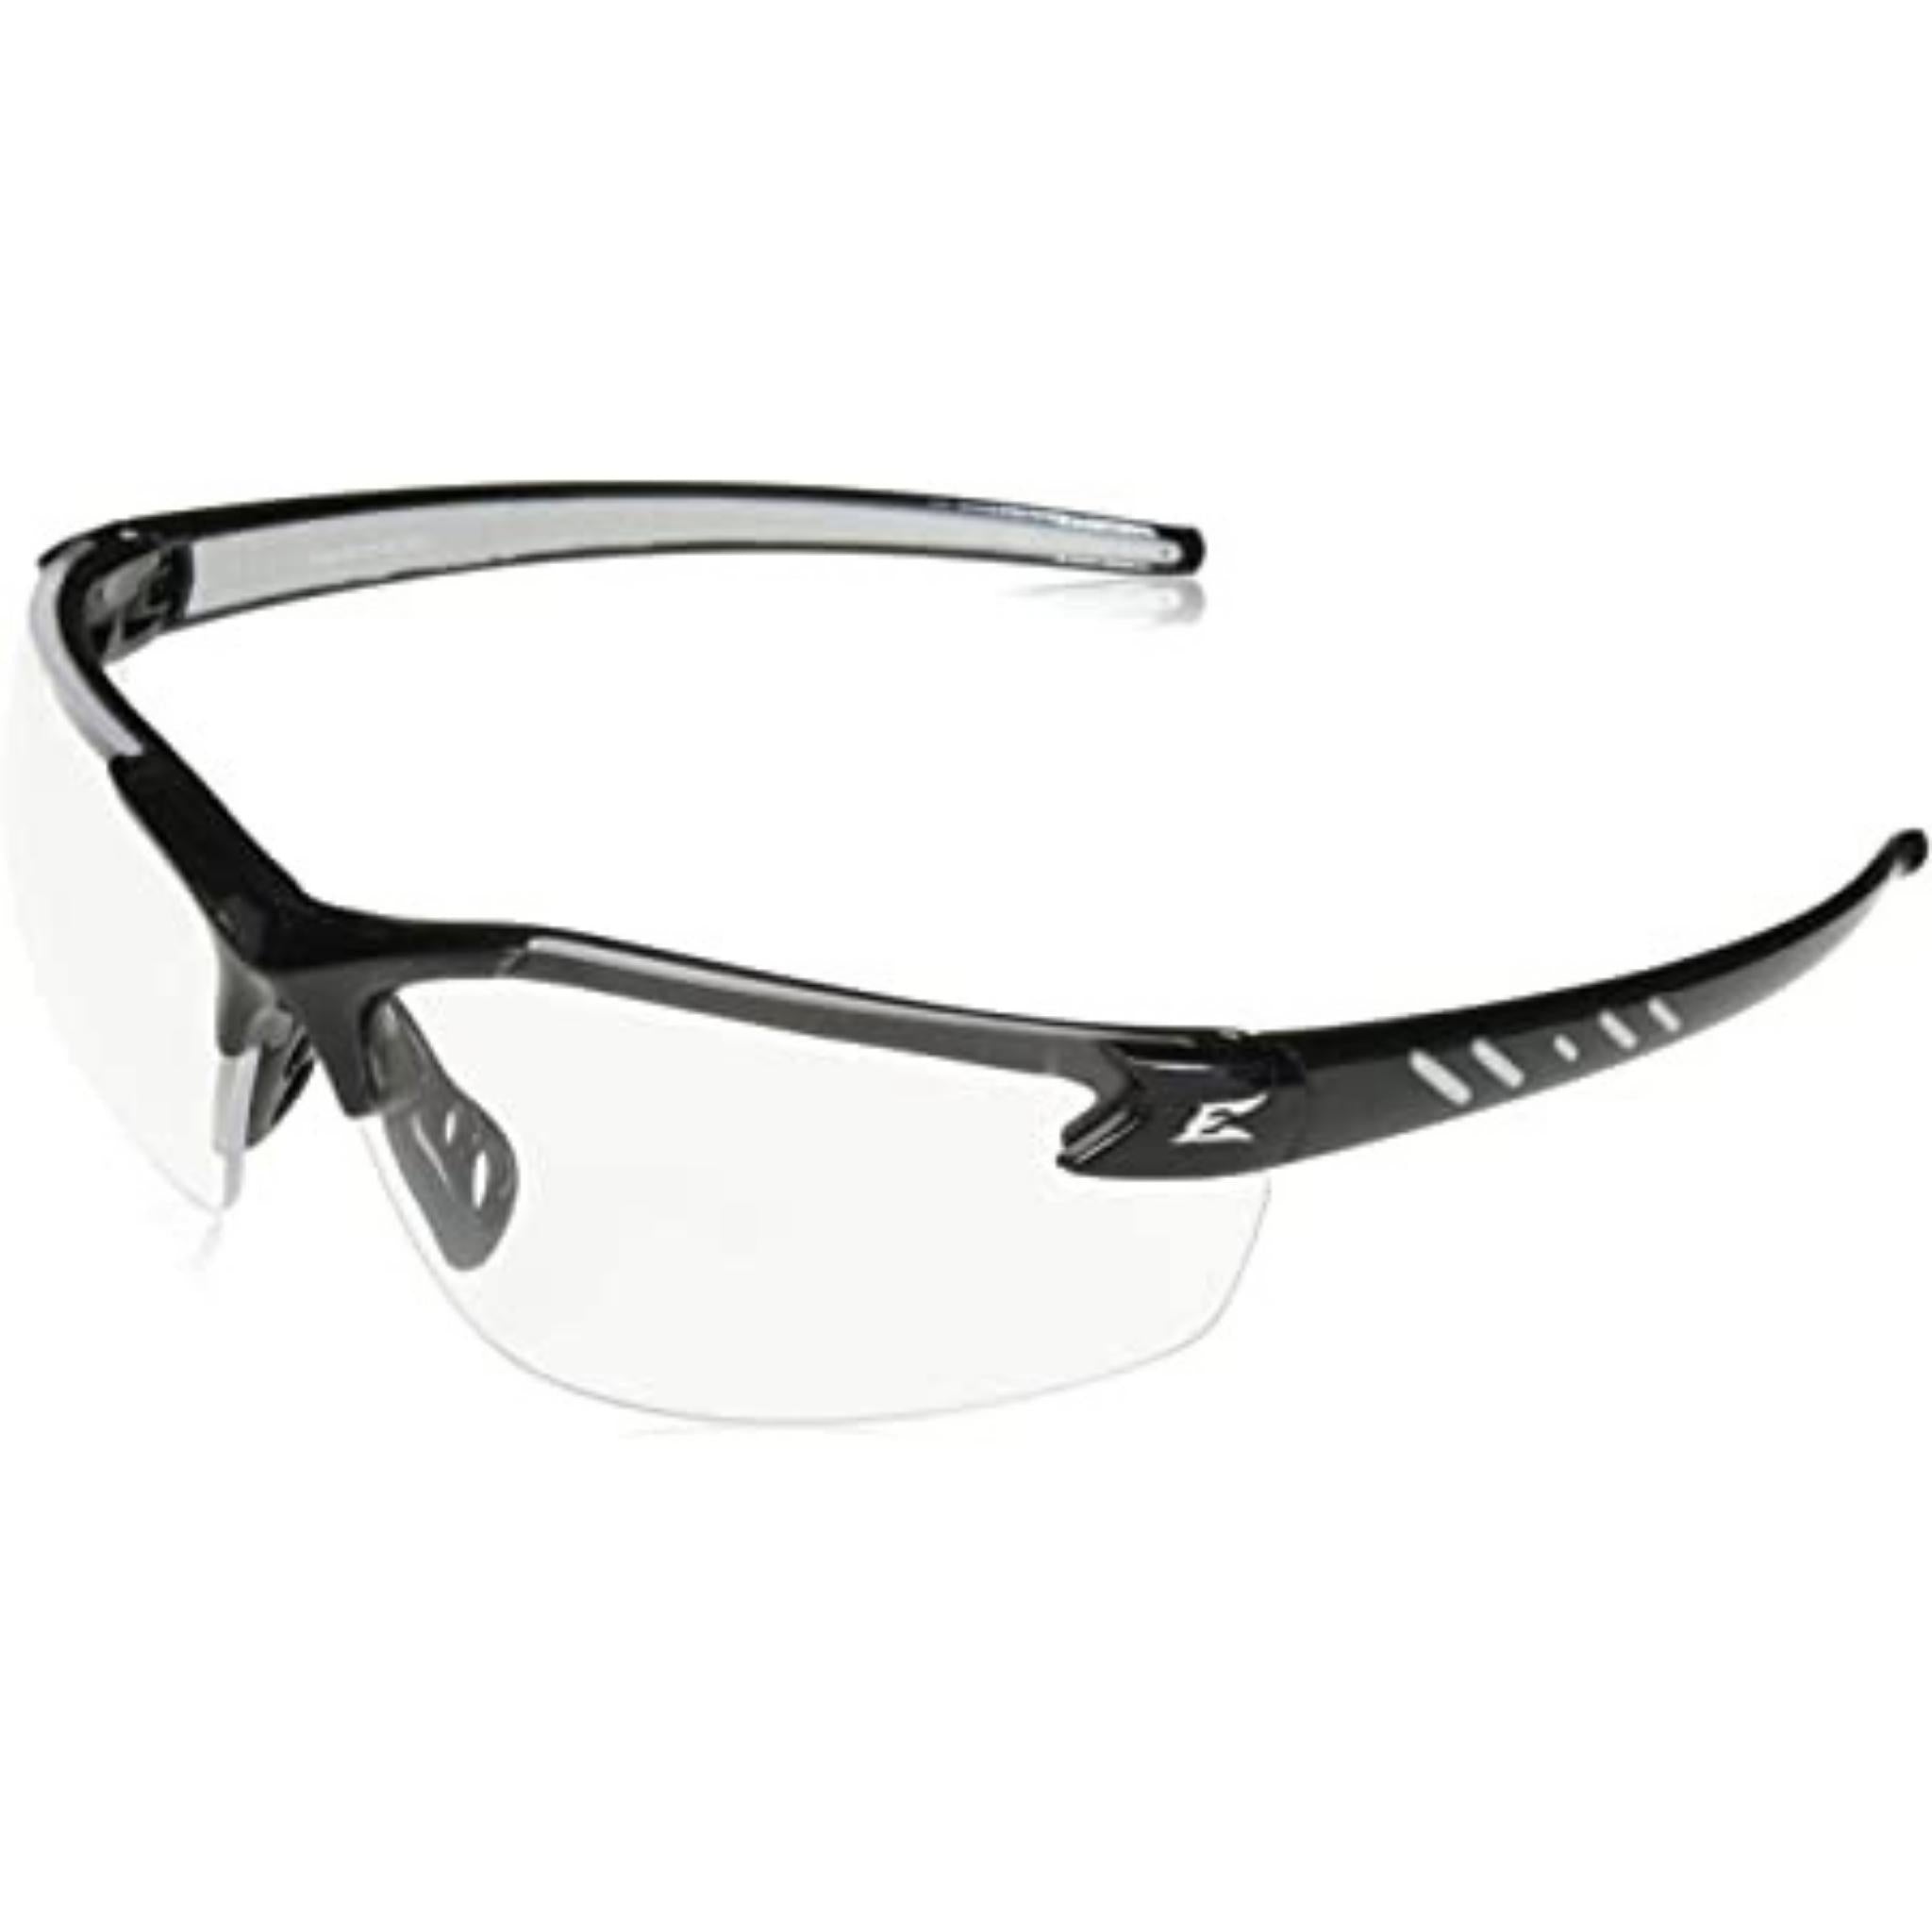 Edge DZ111-G2 Zorge G2 Safety Glasses - Black Frame - Clear Lens